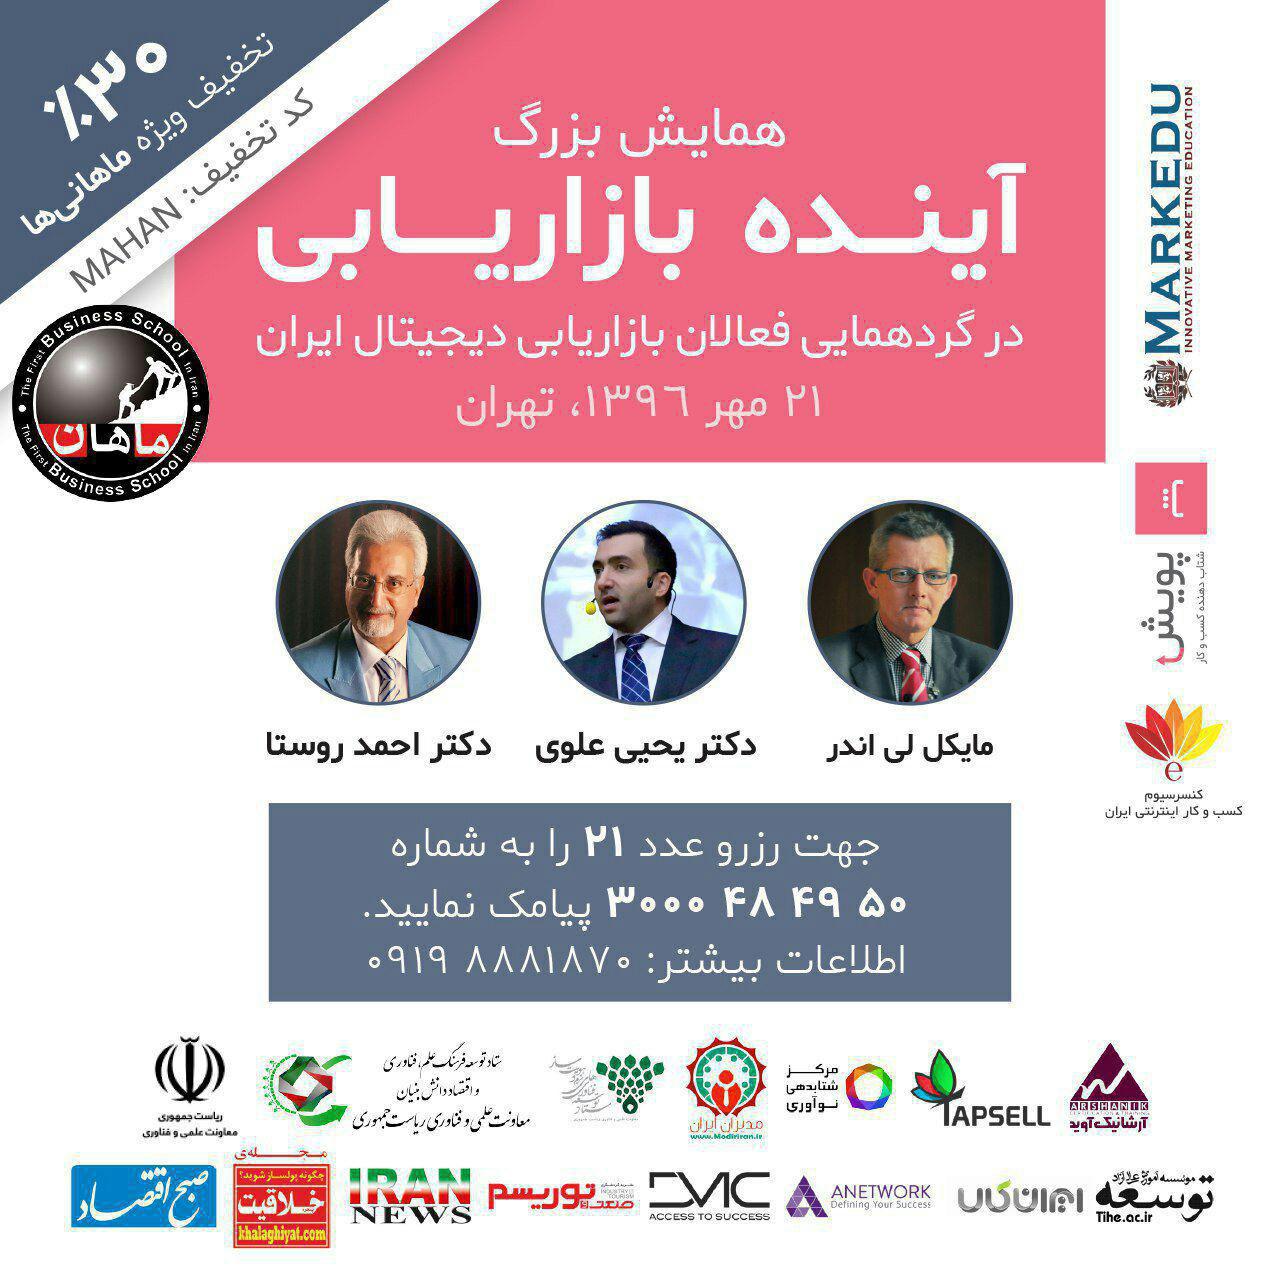 همایش بزرگ آینده بازاریابی در گردهمایی فعالان دیجیتال ایران با حضور اساتید بزرگ بازاریابی مورخ 21 مهرماه برگزار می گردد.